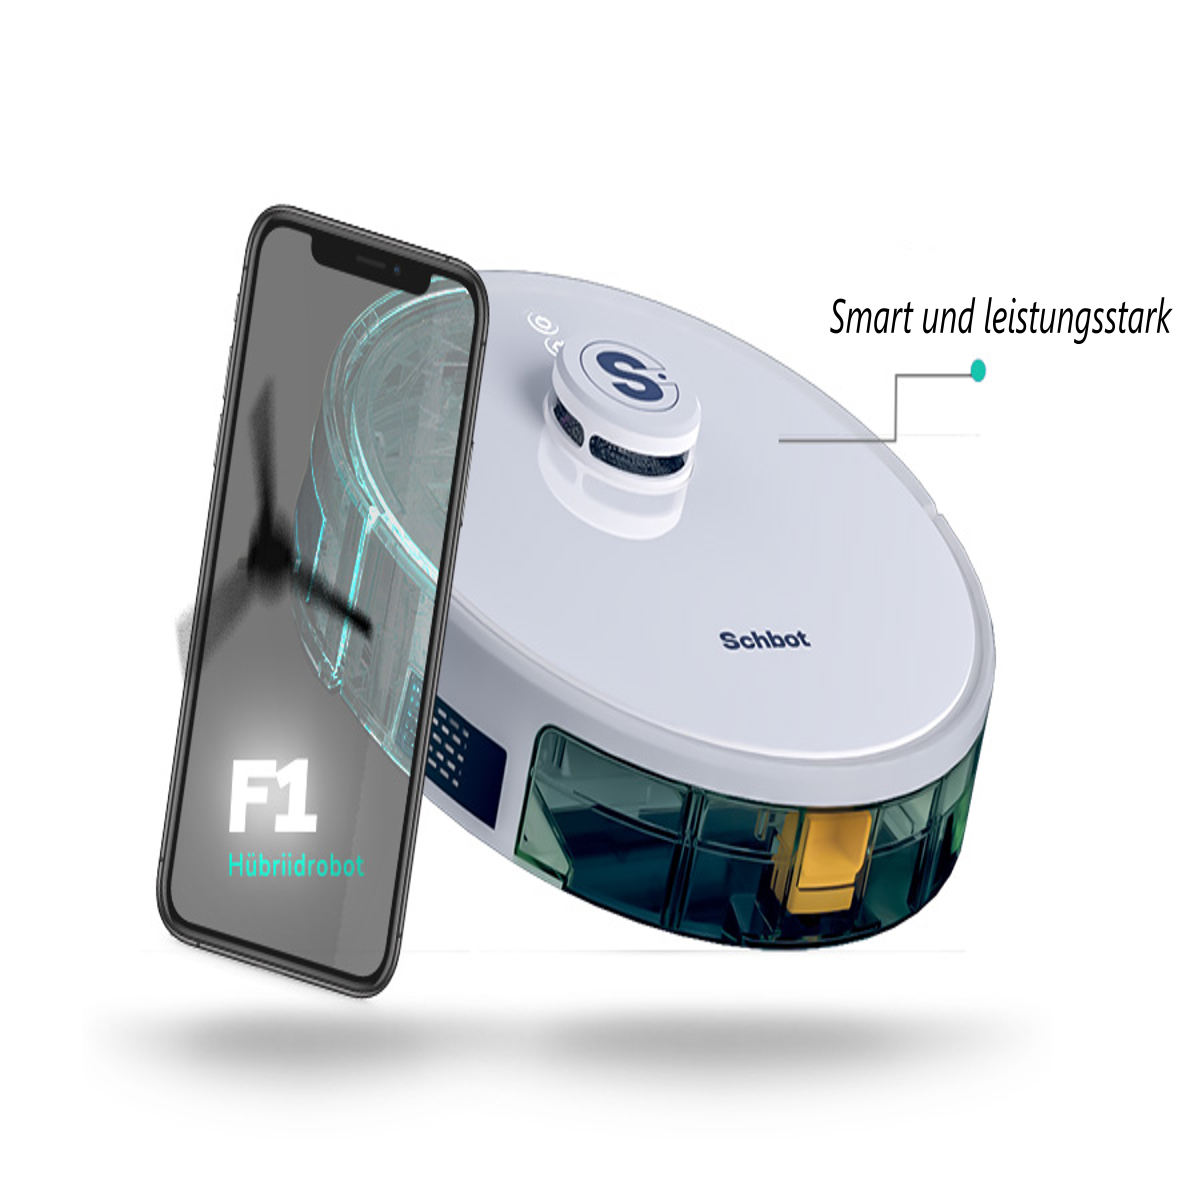 SCHBOT F1-Weiß mit Wischfunktion Roboterstaubsauger App connection Saugroboter und